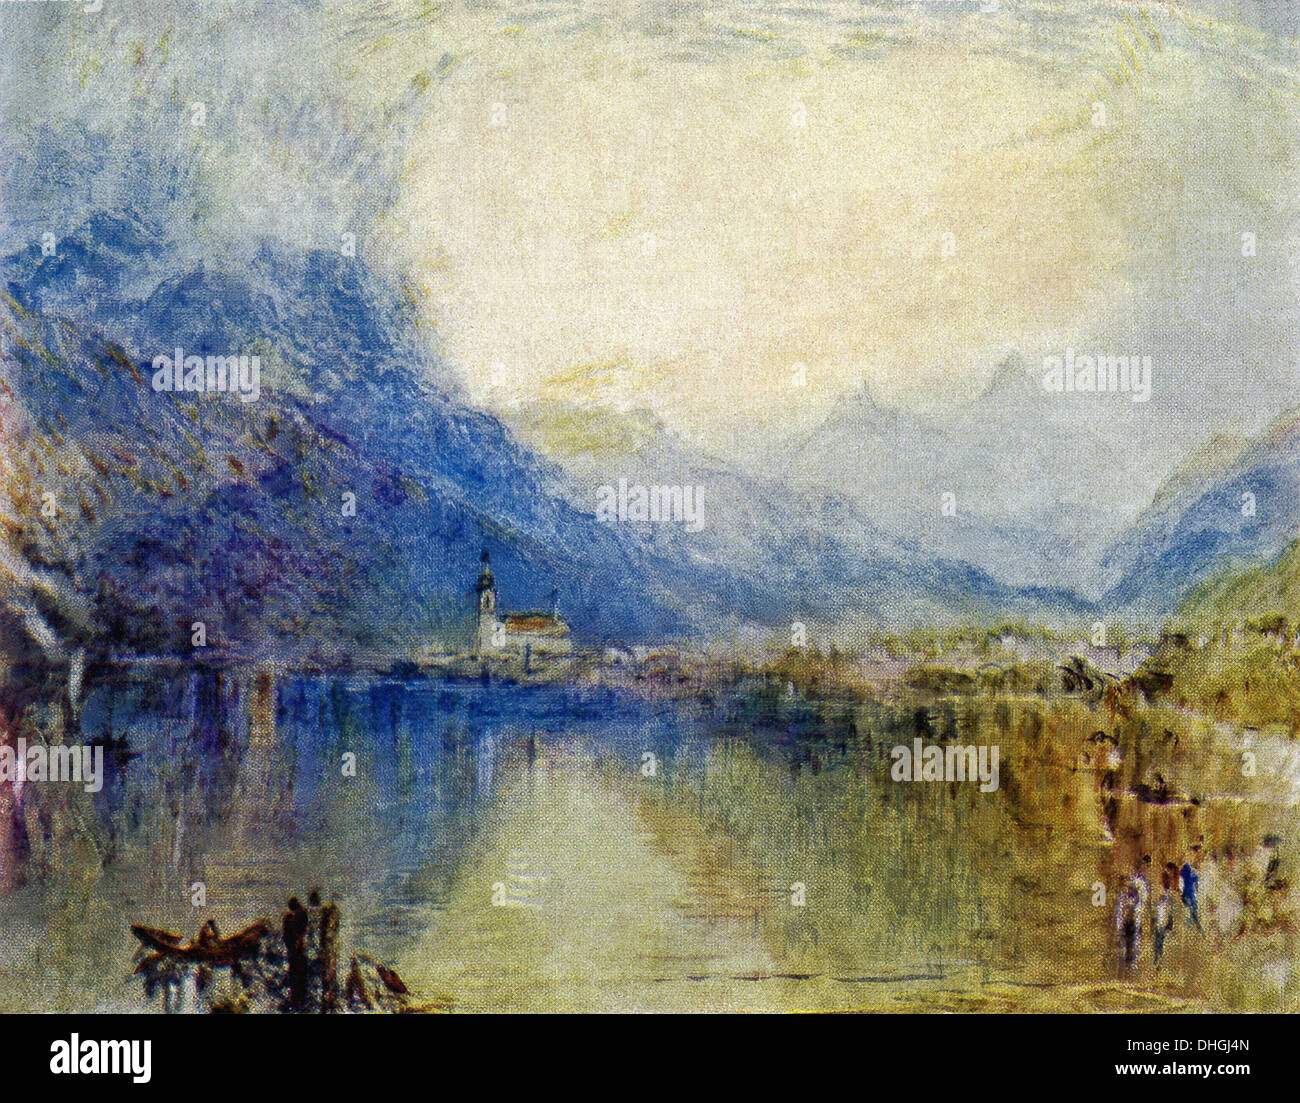 Cette couleur à l'eau par l'artiste anglais JMW Turner est intitulé Arth du lac de Zoug en Suisse. Banque D'Images